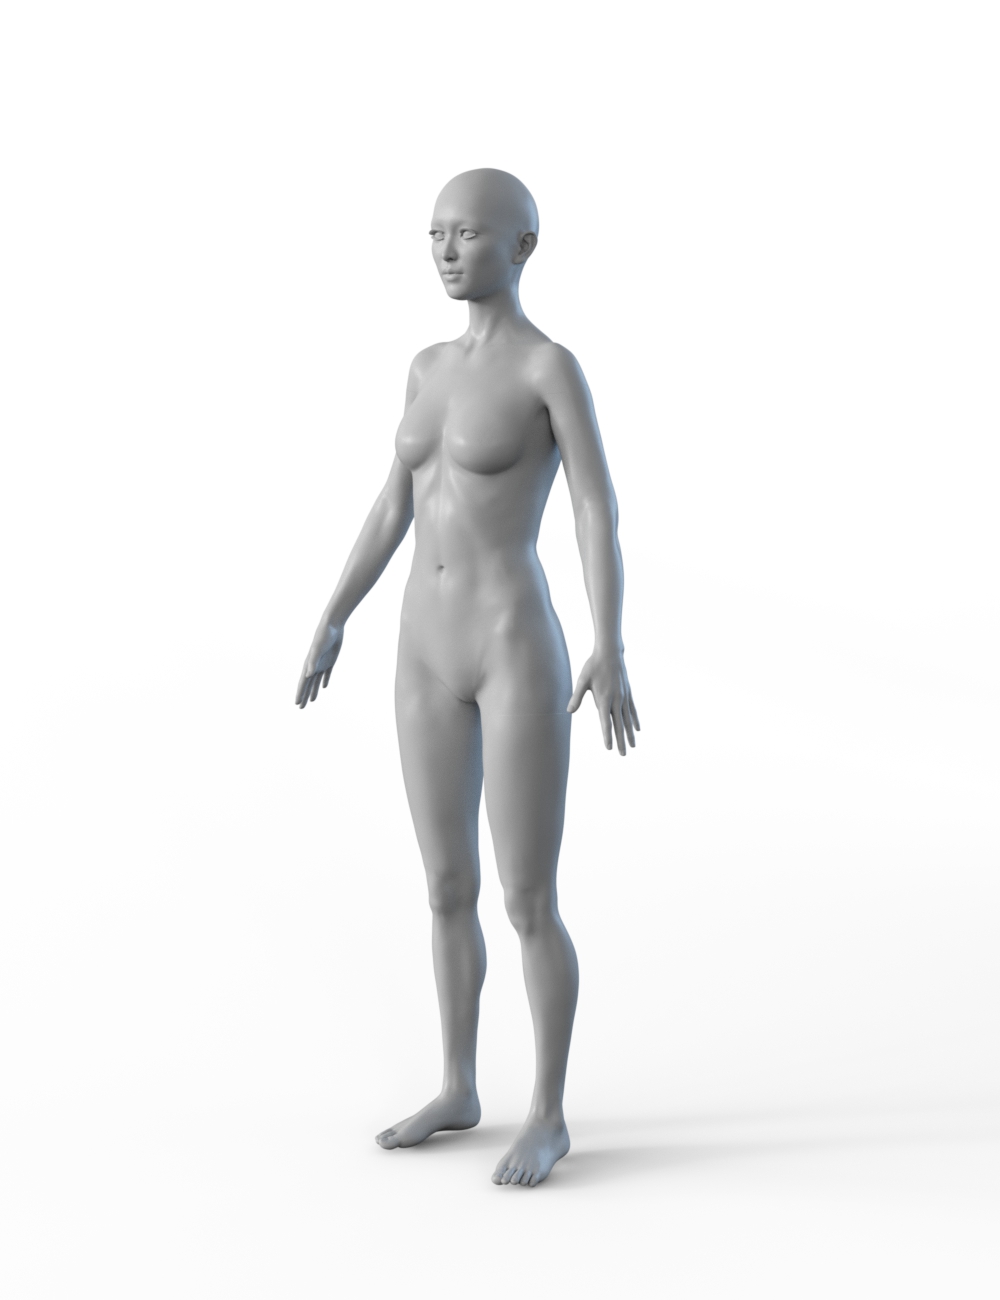 FBX- Mei Lin Vagabond by: Paleo, 3D Models by Daz 3D